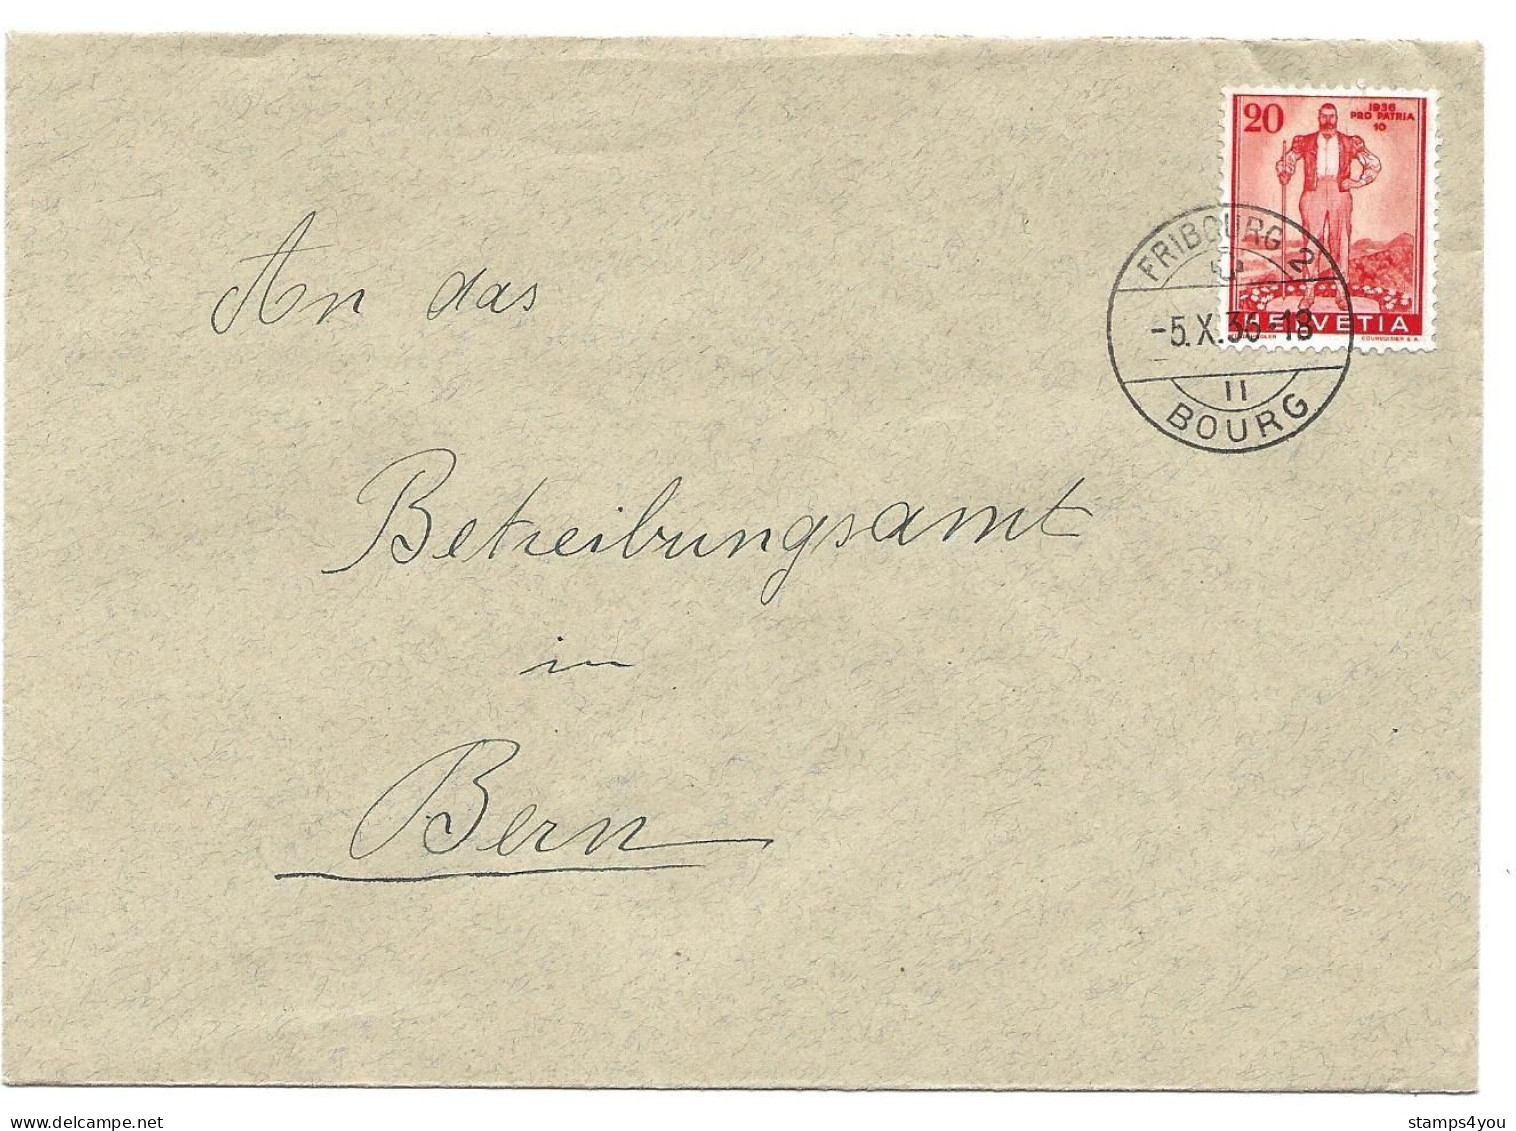 169 - 94 - Enveloppe Envoyée De Fribourg 1936 - Timbre Pro Patria - Covers & Documents